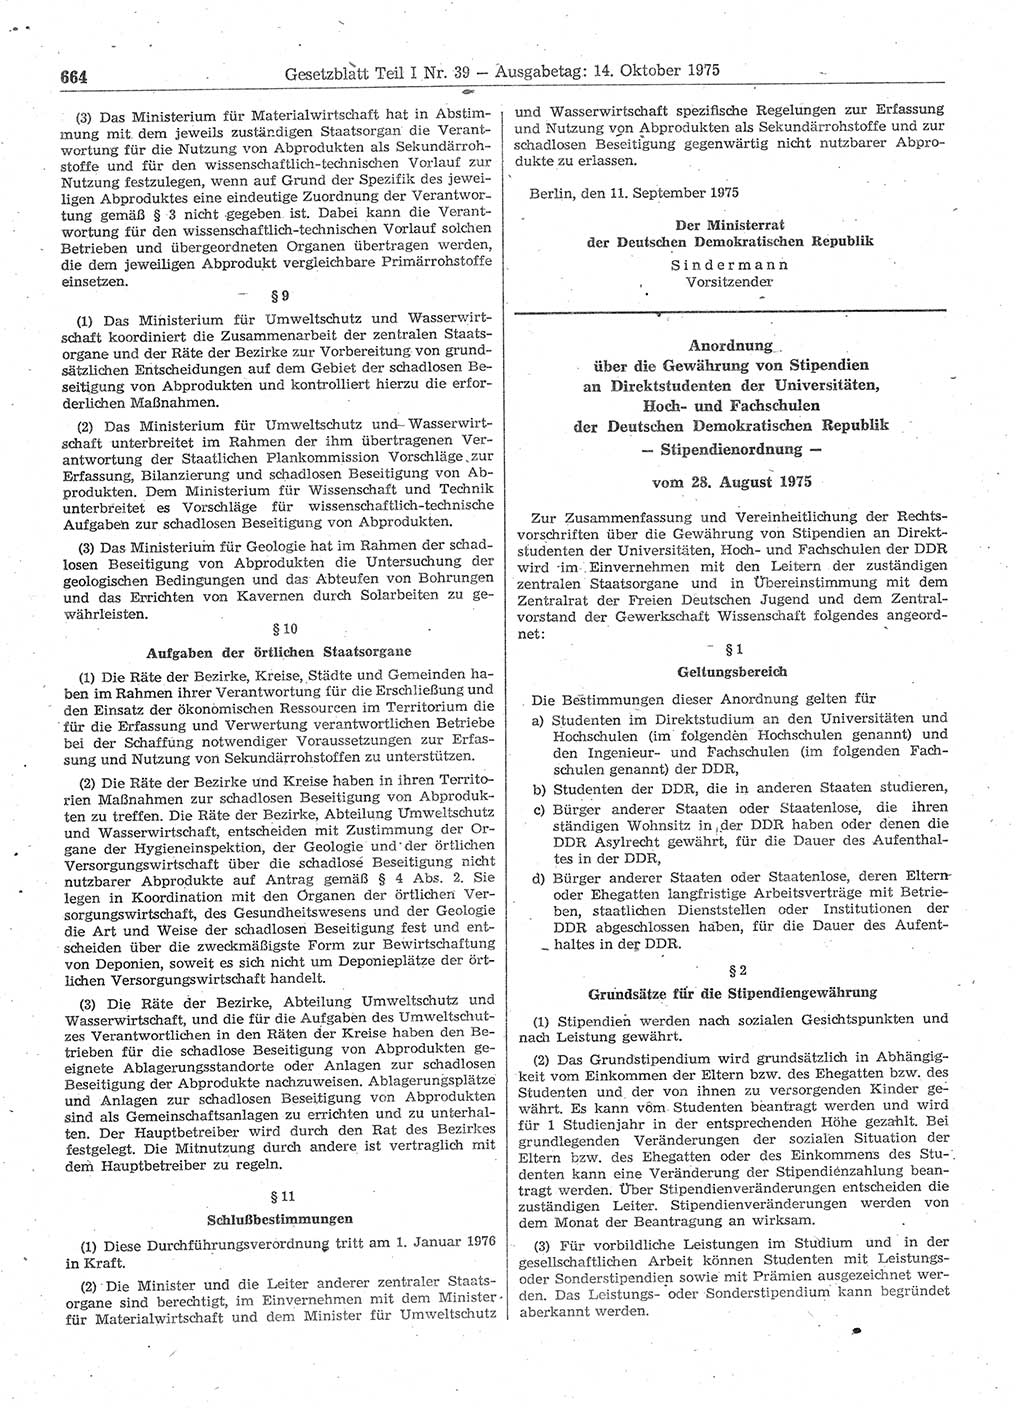 Gesetzblatt (GBl.) der Deutschen Demokratischen Republik (DDR) Teil Ⅰ 1975, Seite 664 (GBl. DDR Ⅰ 1975, S. 664)